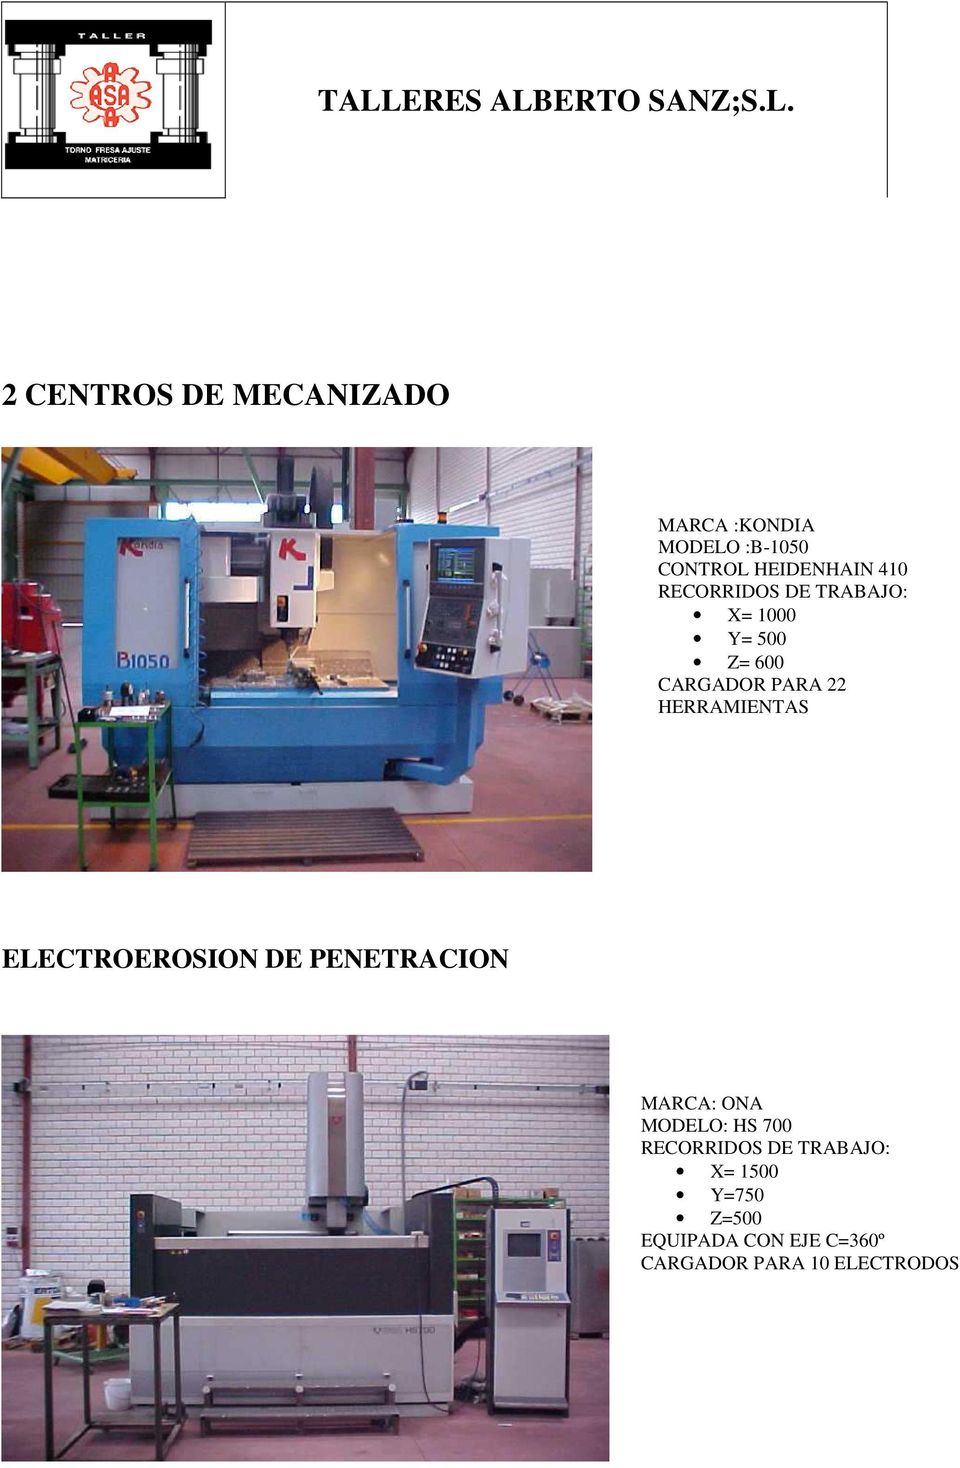 HERRAMIENTAS ELECTROEROSION DE PENETRACION MARCA: ONA MODELO: